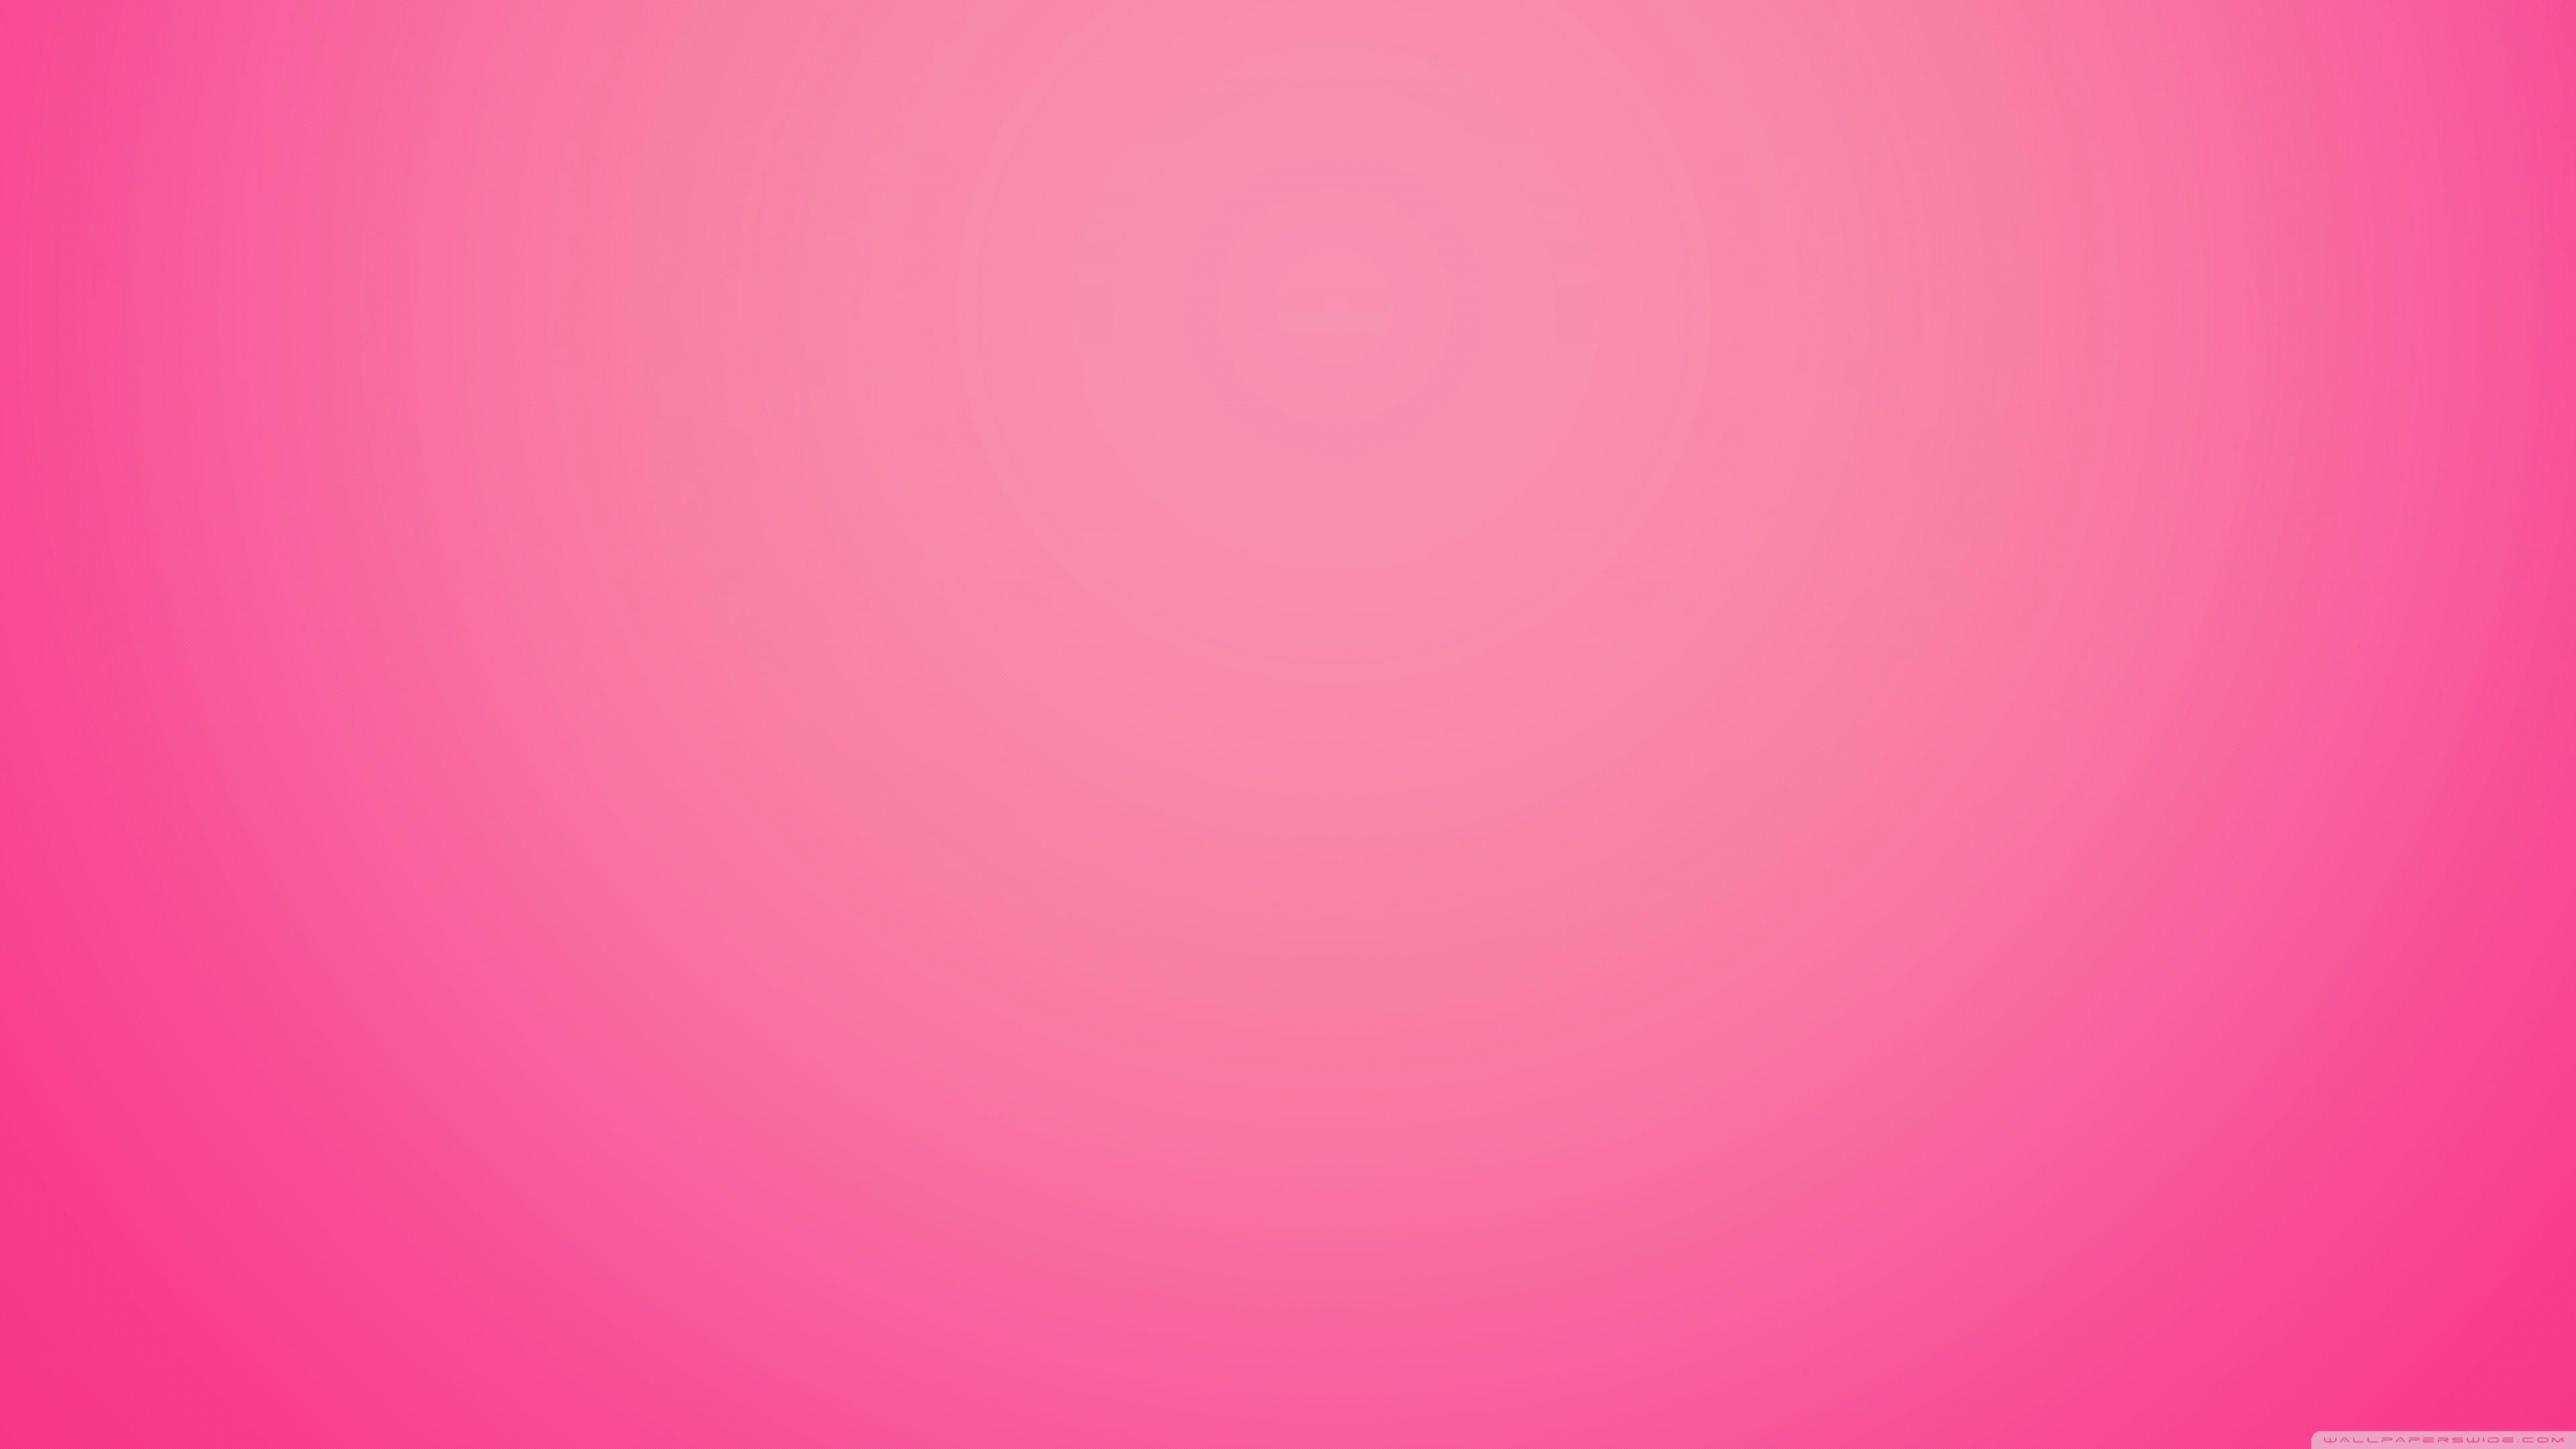 Hình nền 4k màu hồng là lựa chọn hoàn hảo cho những ai yêu thích vẻ đẹp tinh tế và đầy màu sắc. Bạn sẽ được trải nghiệm những hình ảnh đẹp nhất với chất lượng tuyệt hảo. Hãy khám phá ngay hình nền 4k màu hồng đầy sắc màu để tận hưởng trải nghiệm tuyệt vời này!